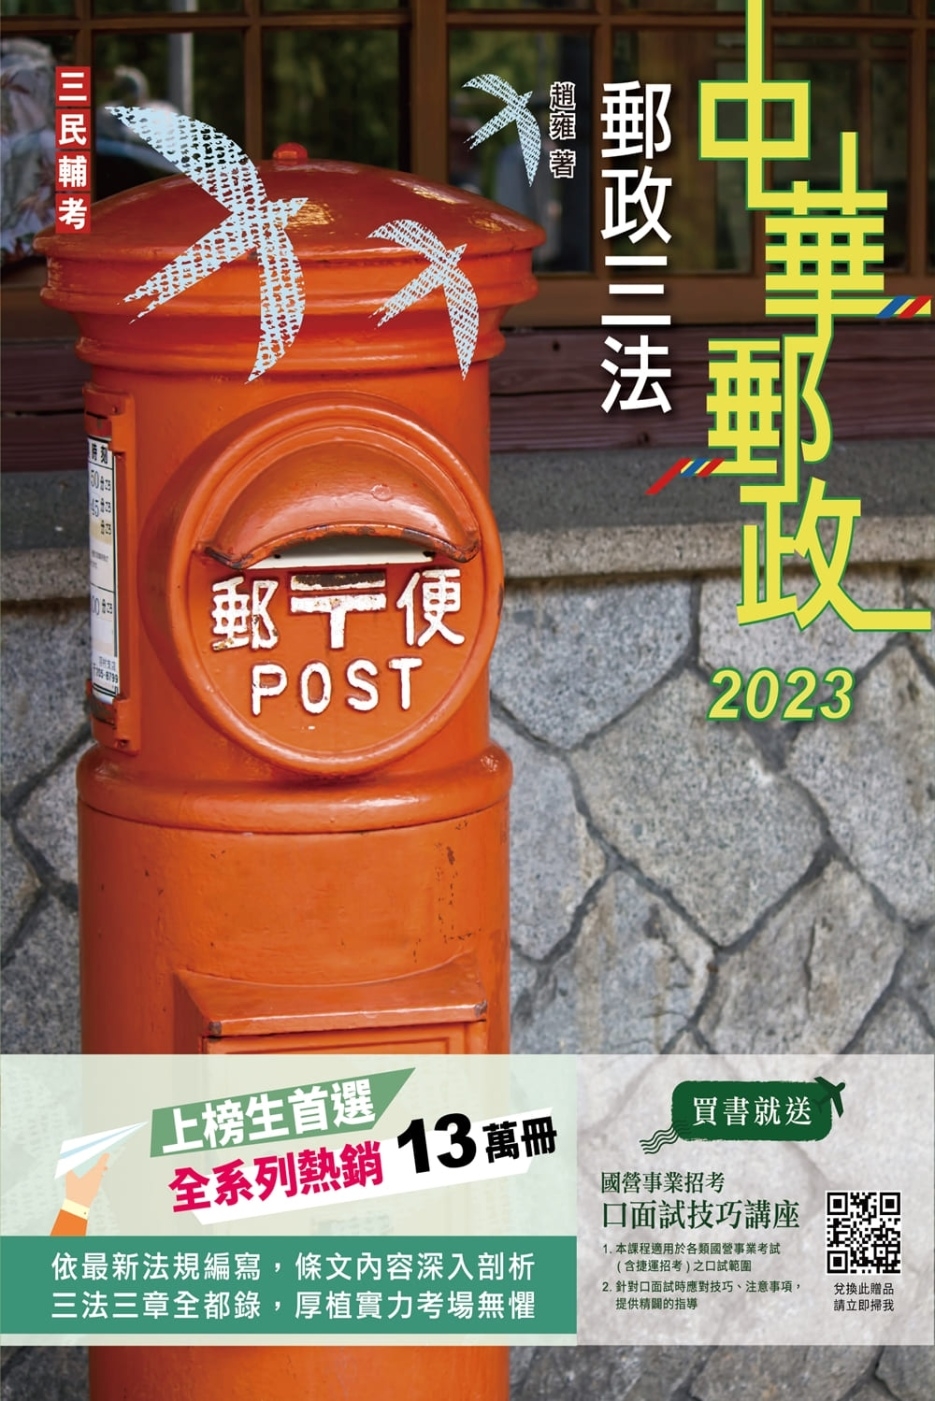 2023郵政三法(中華郵政適用)(贈國營事業口面試技巧講座雲端課程)(六版)